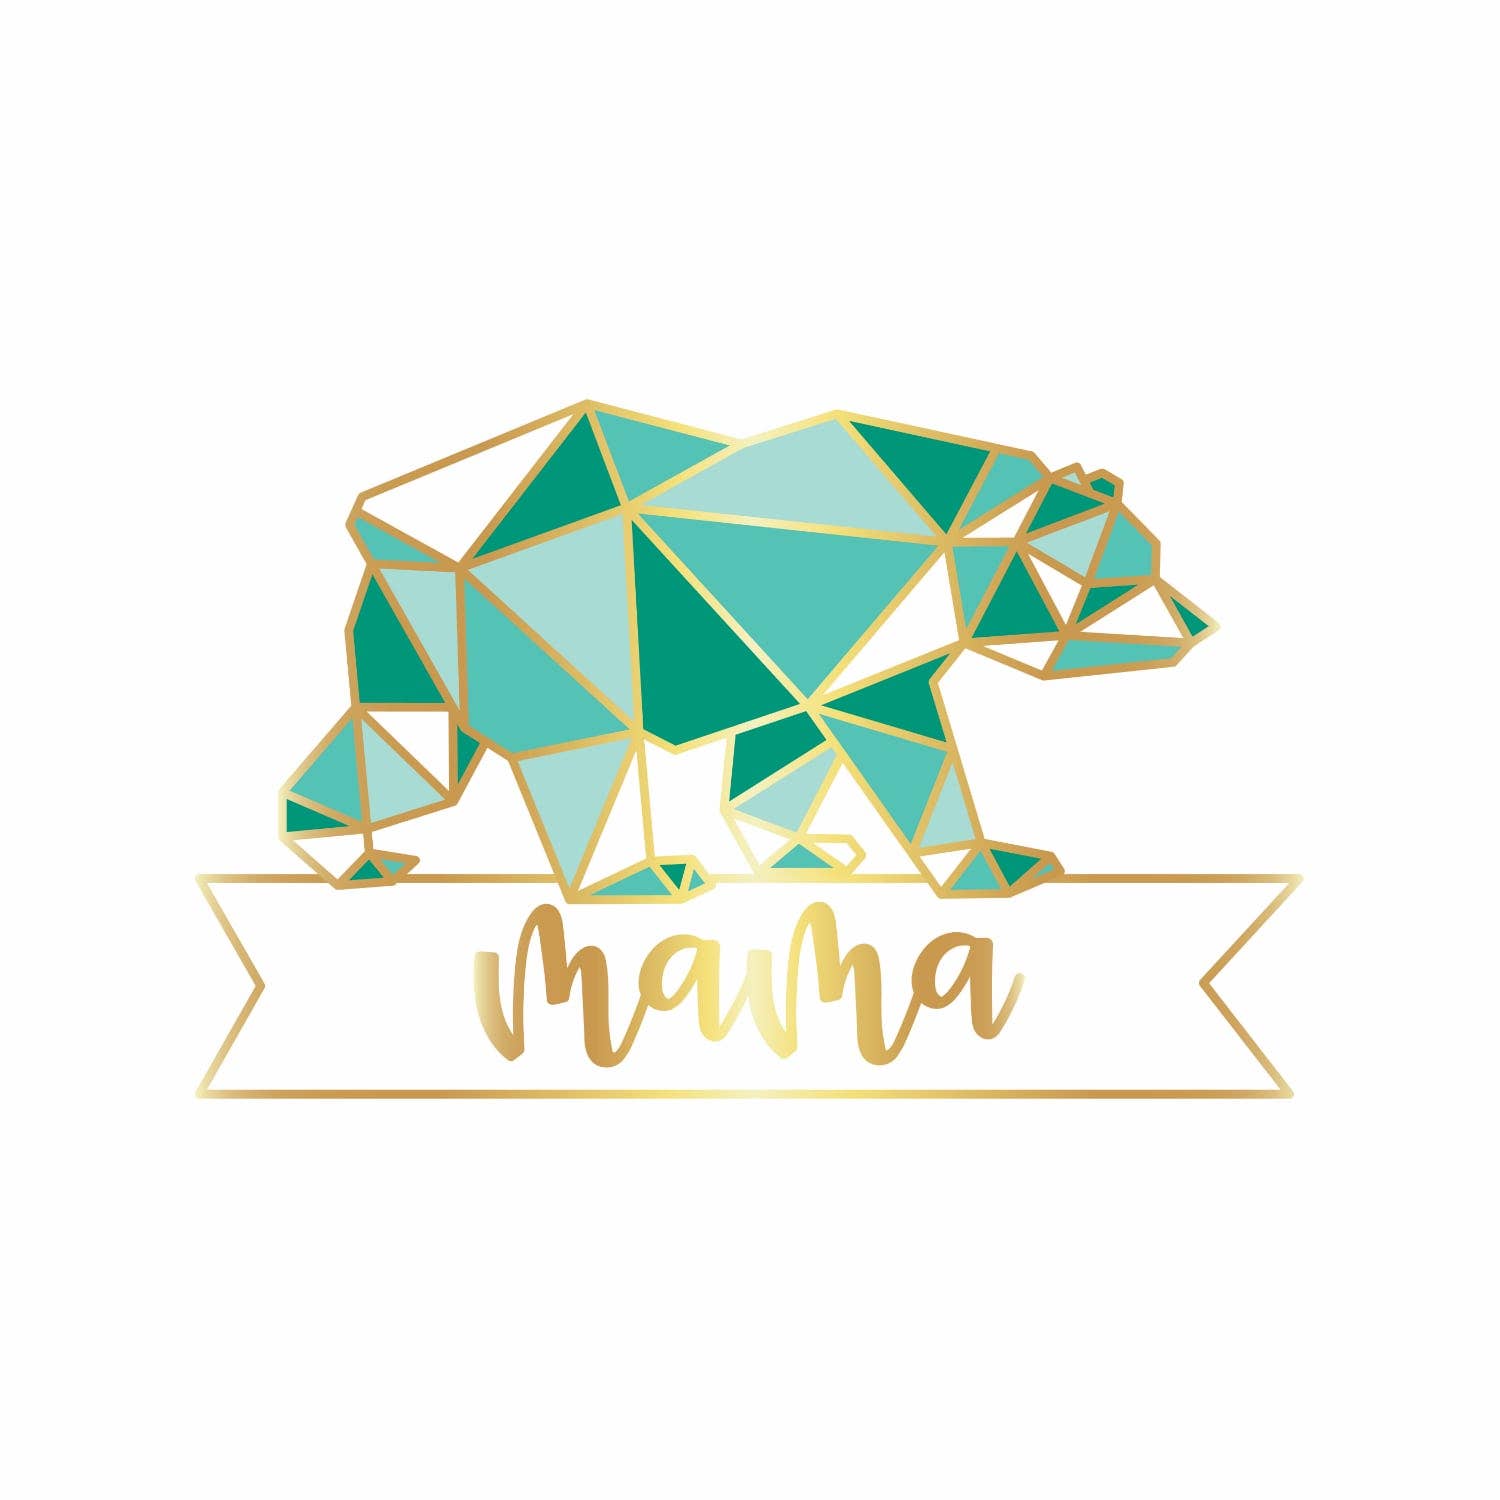 Mama Bear Pin